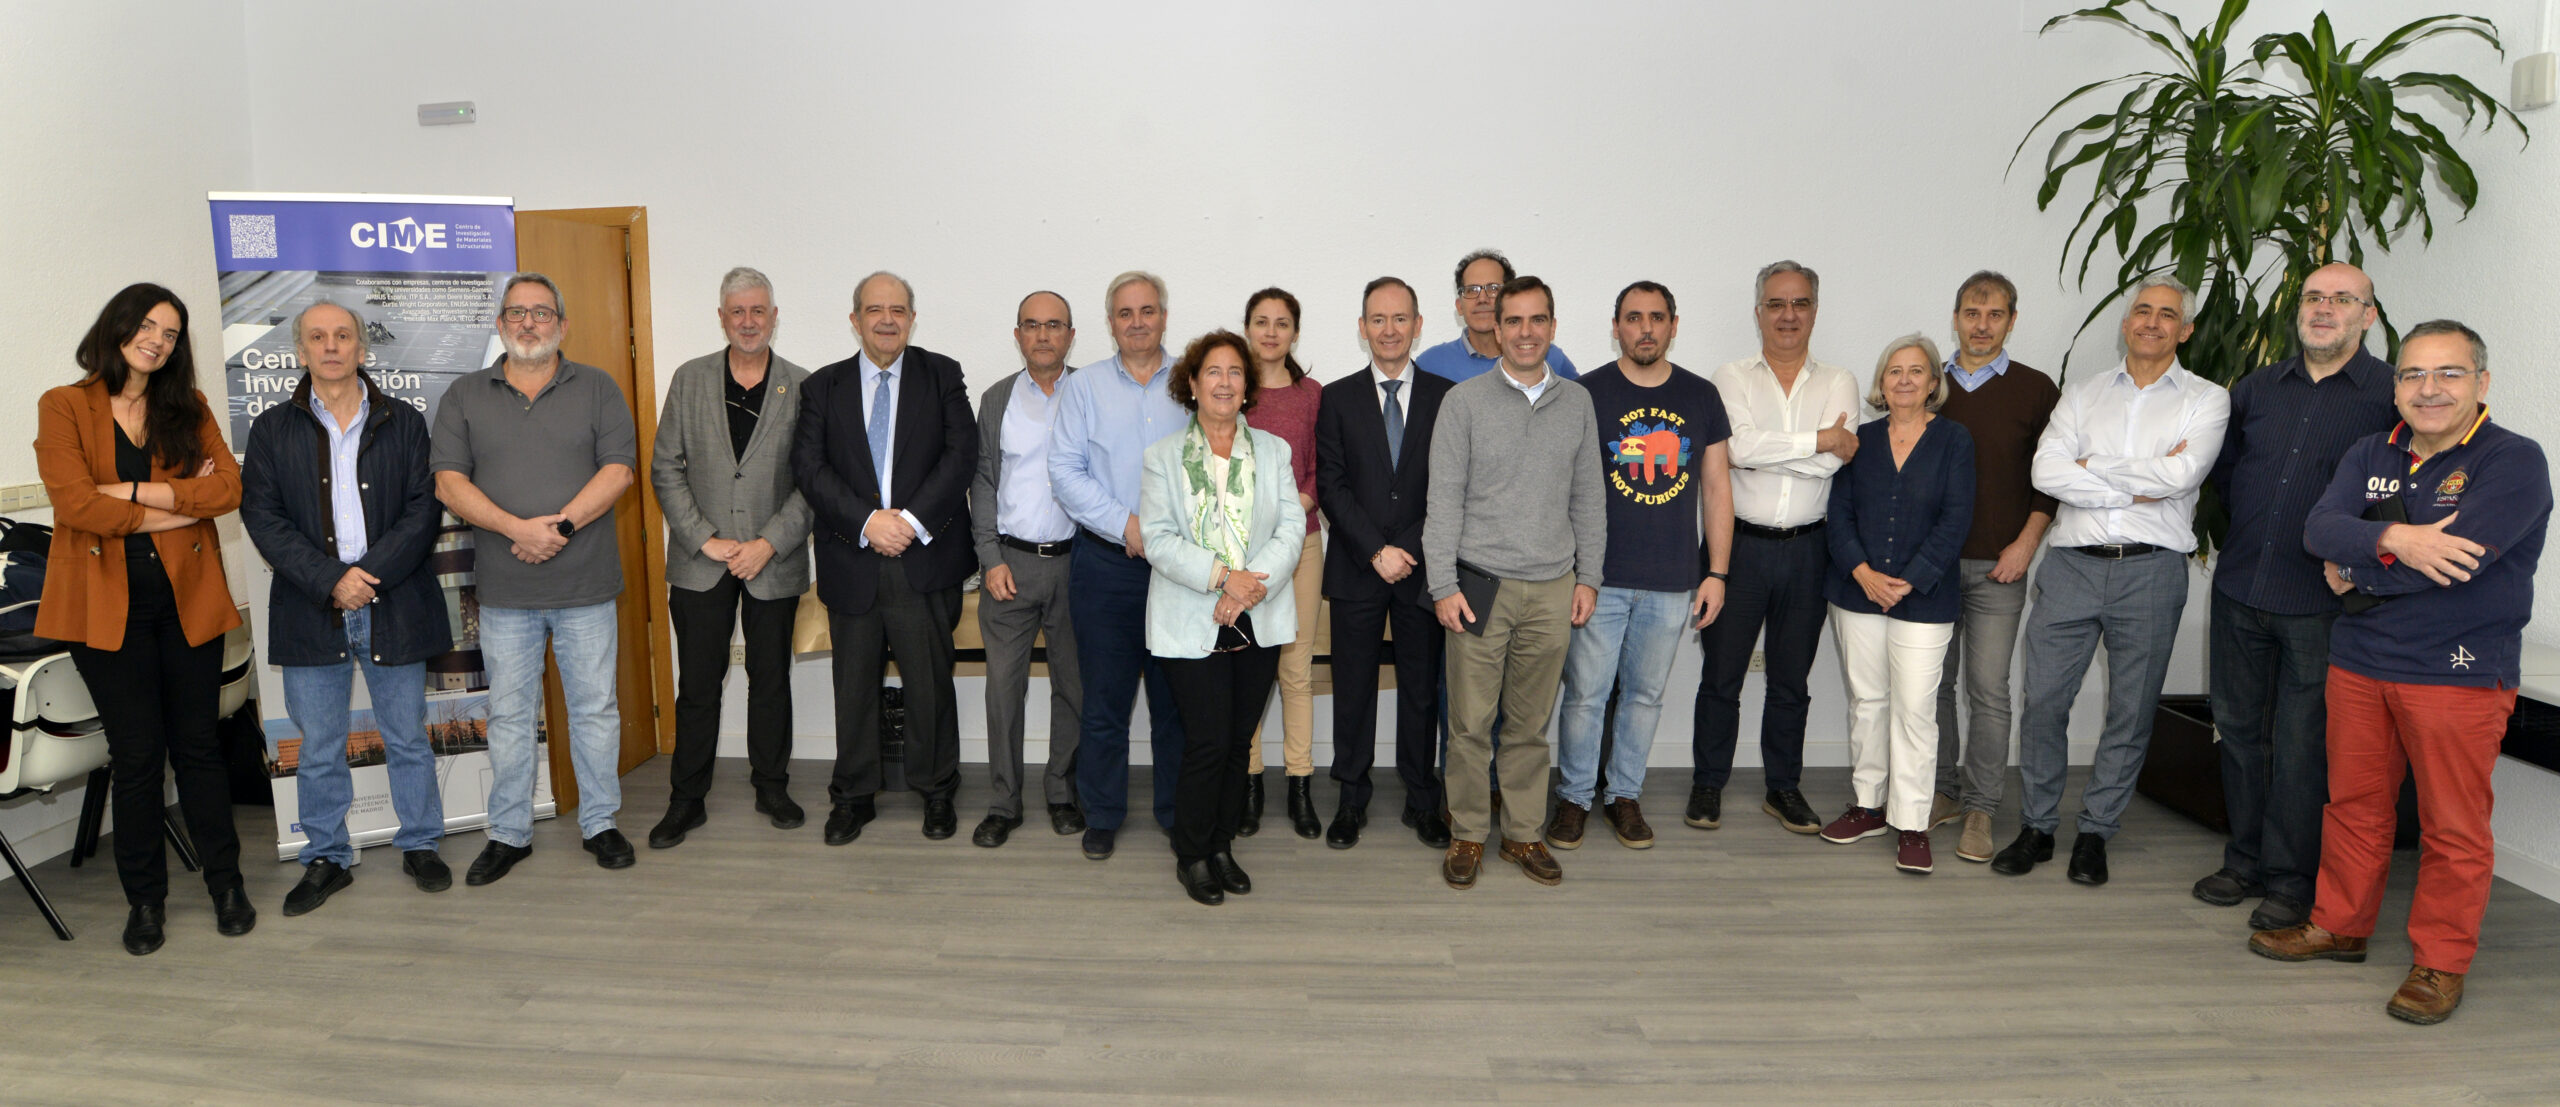 Los directores de los Institutos y Centros de Investigación de la UPM se reunieron en la E.T.S.I. de Caminos, Canales y Puertos.